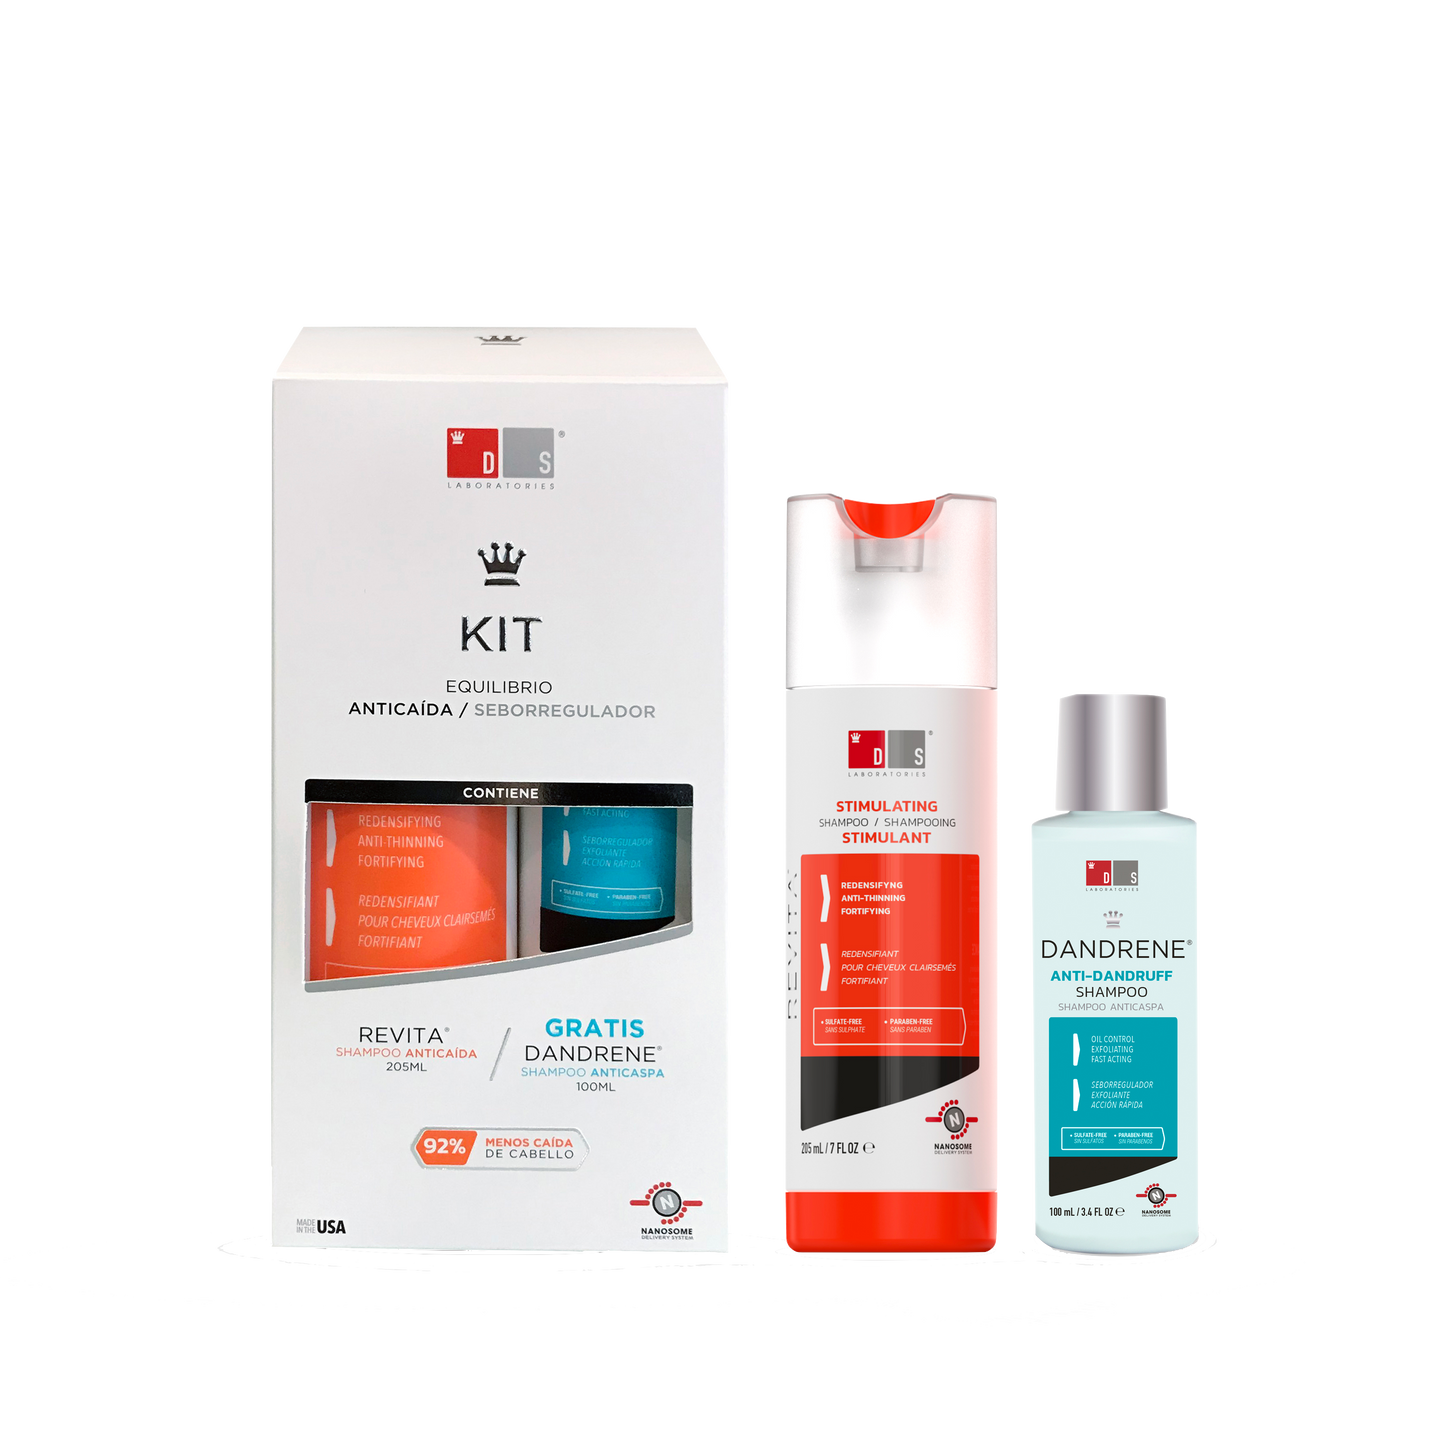 Kit Equilibrio| Revita Shampoo 205ml + Dandrene Shampoo 100ml